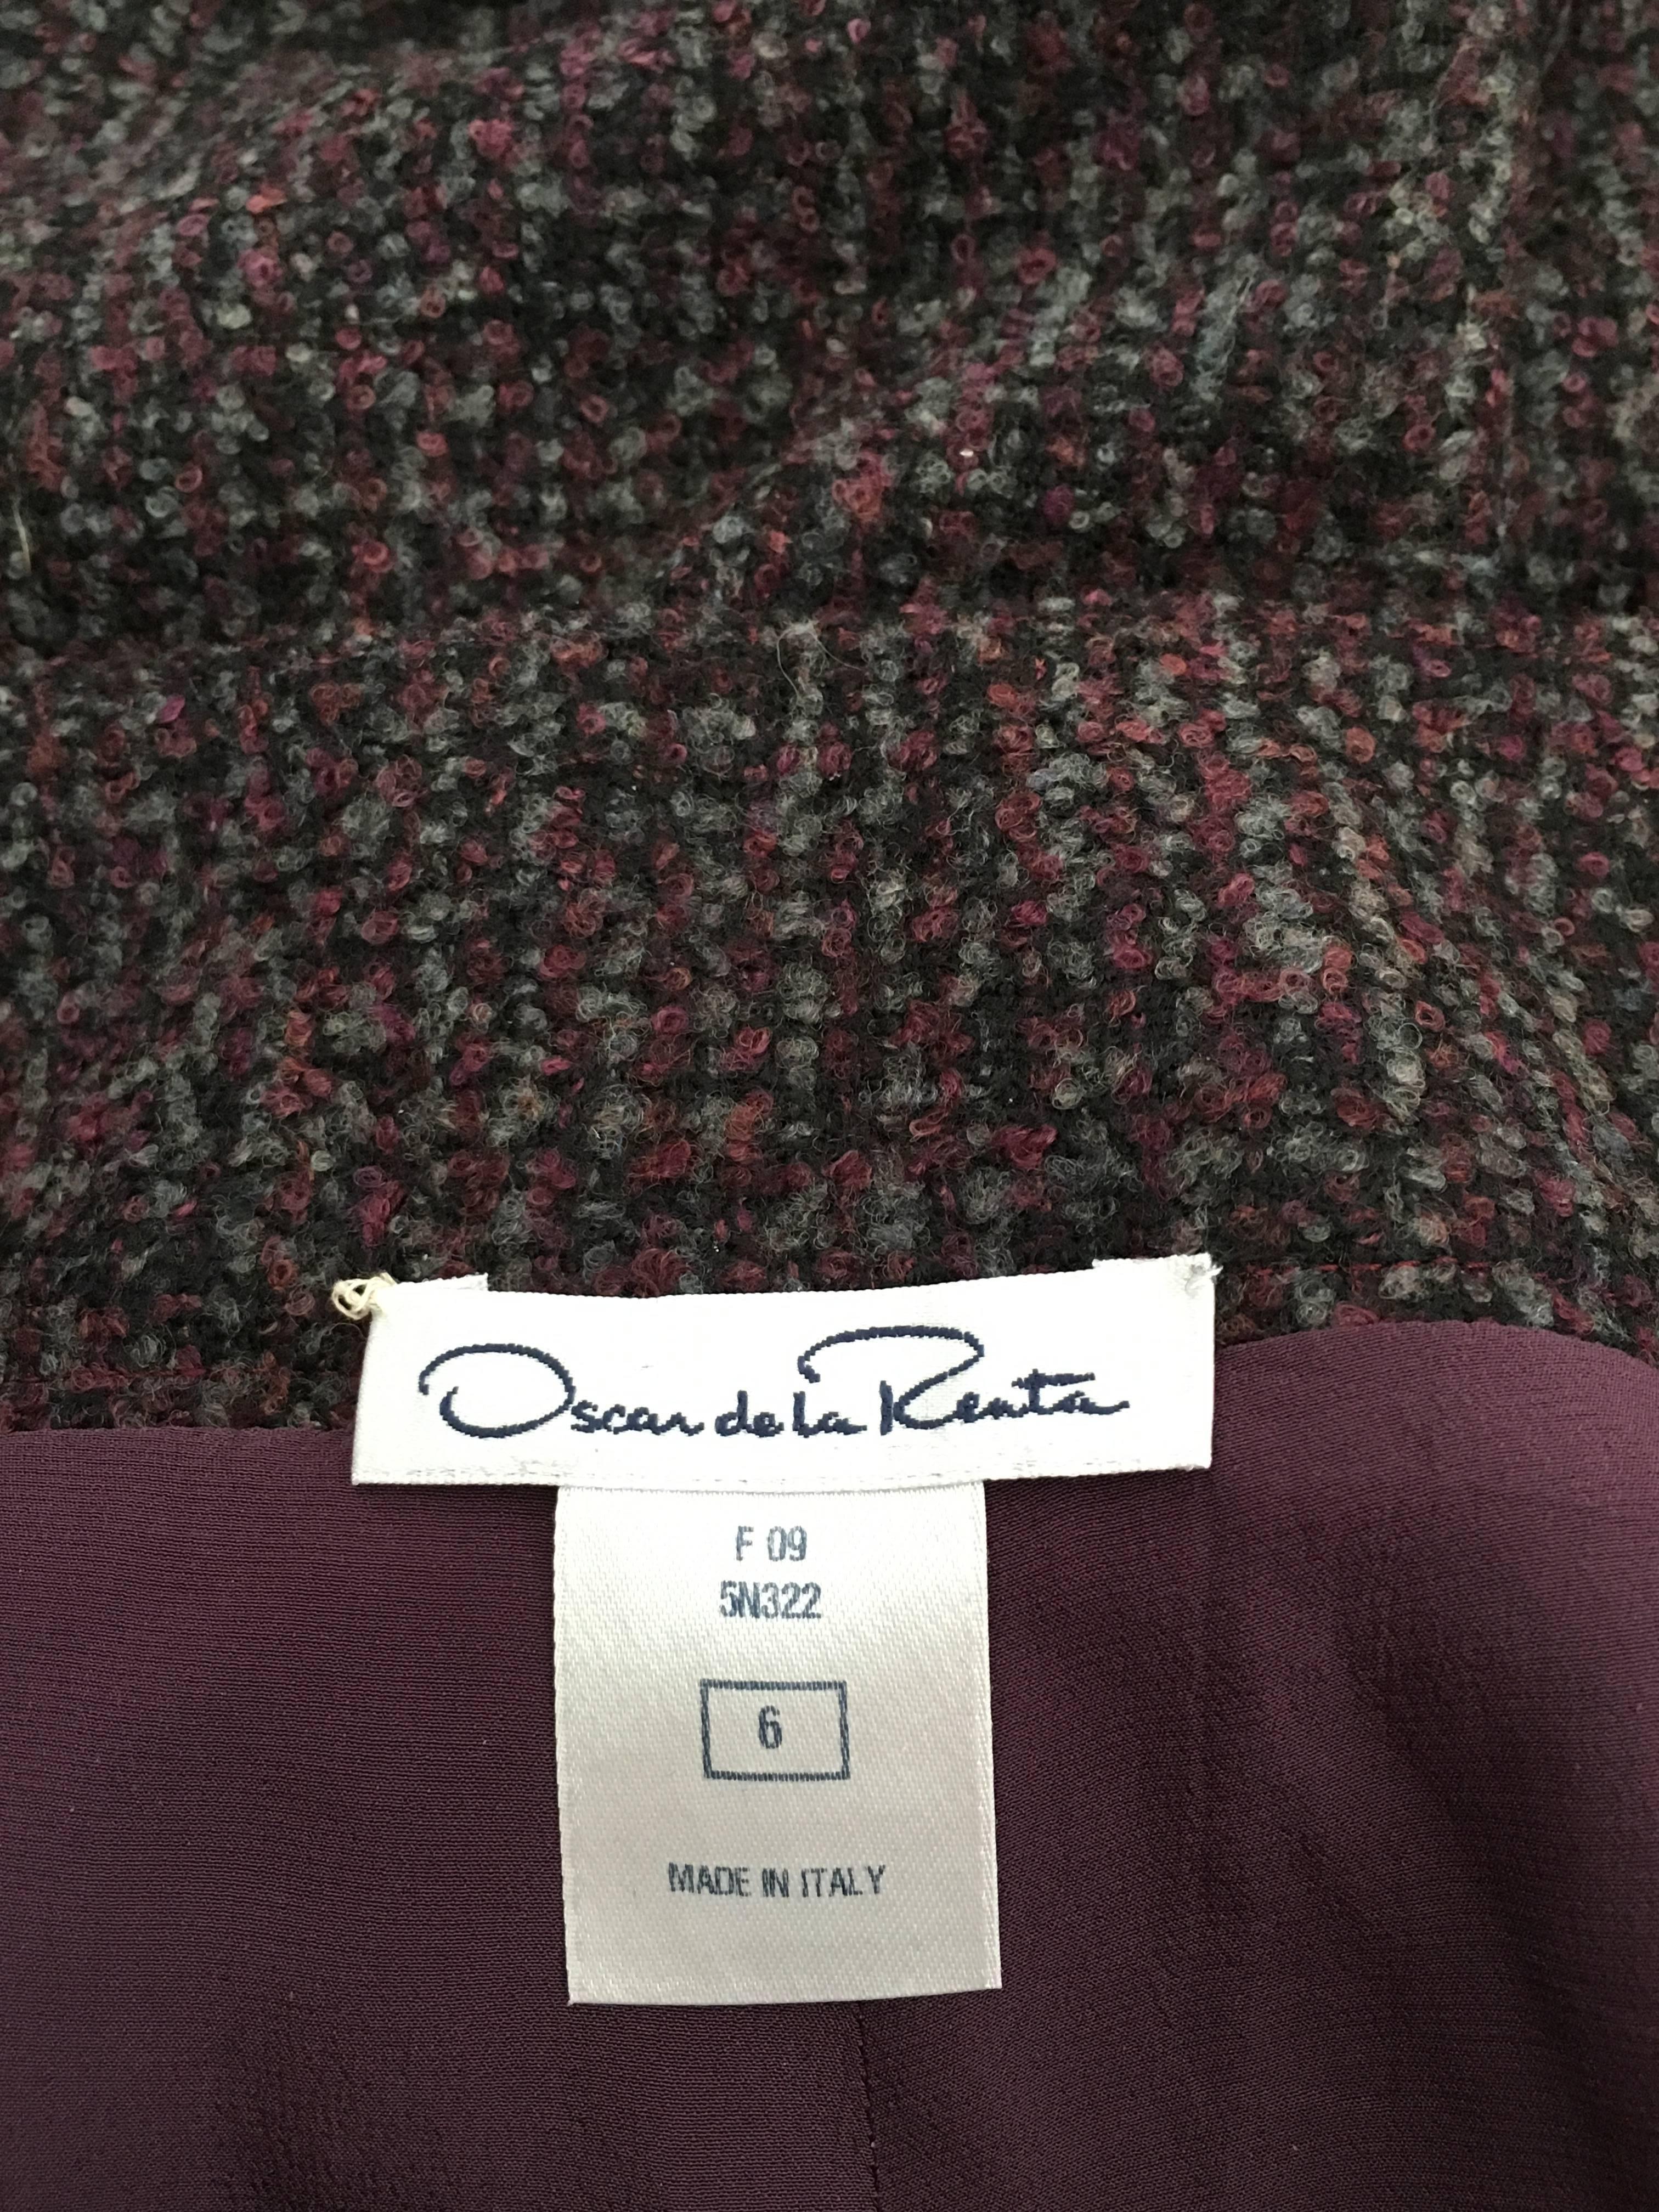 Oscar de la Renta Nubby Flannel Wool Pants Size 6. Made in Italy. For Sale 5